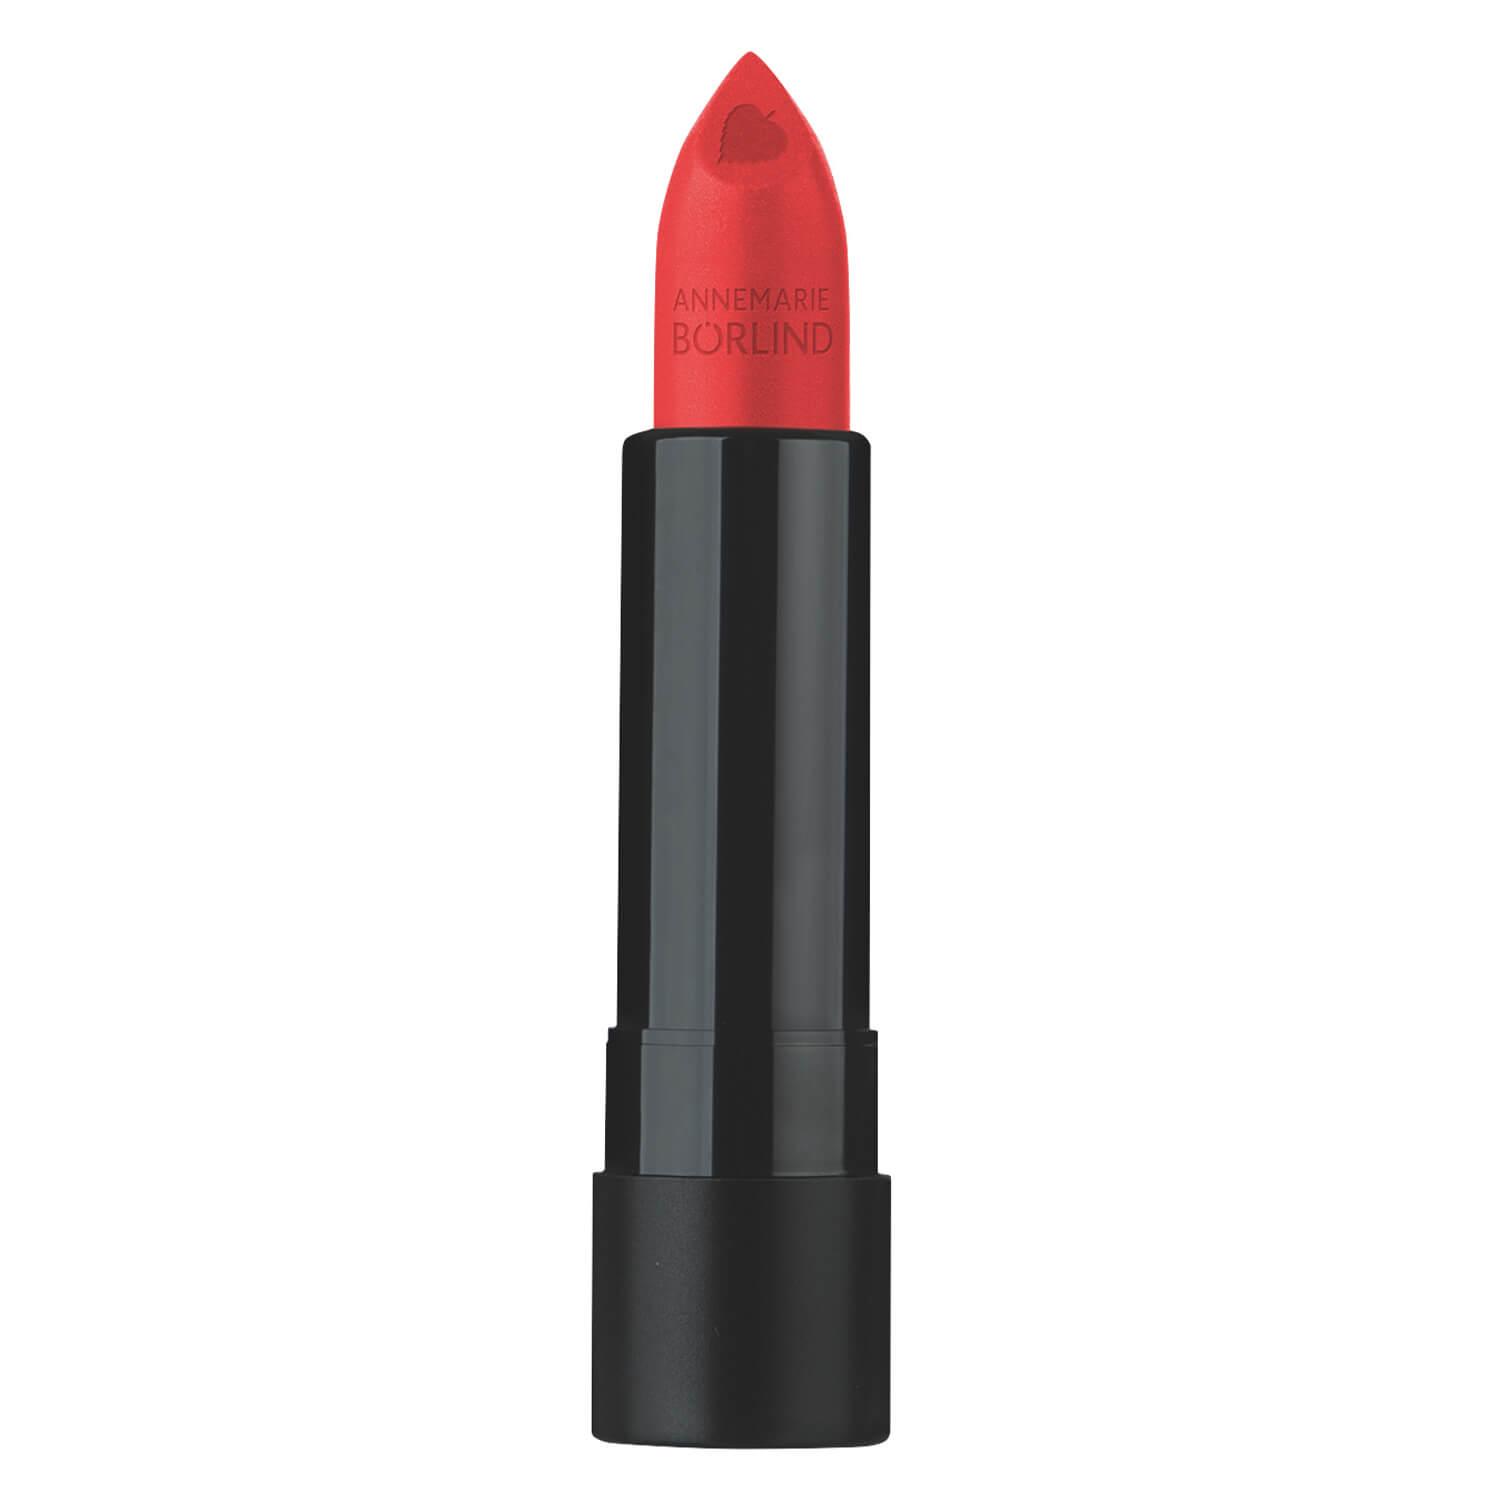  Annemarie Börlind Lips - Lipstick Paris Red